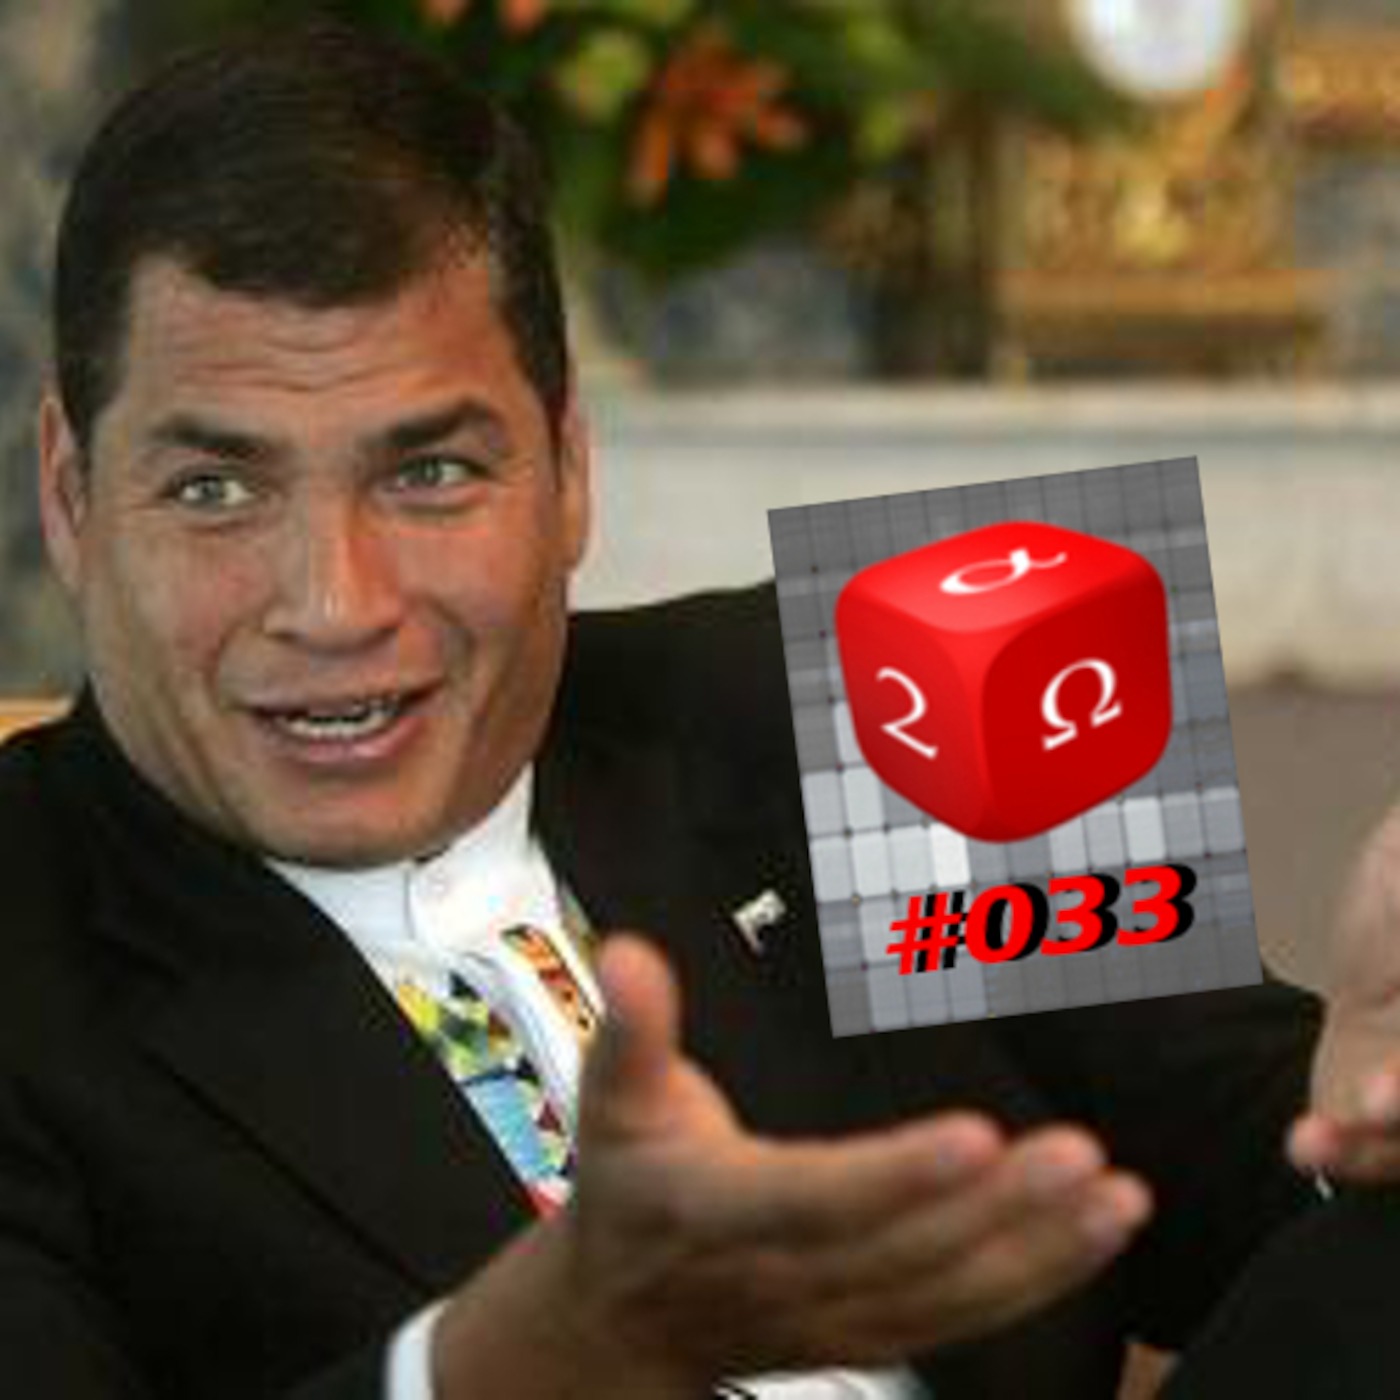 #033 Correa's Ecuador